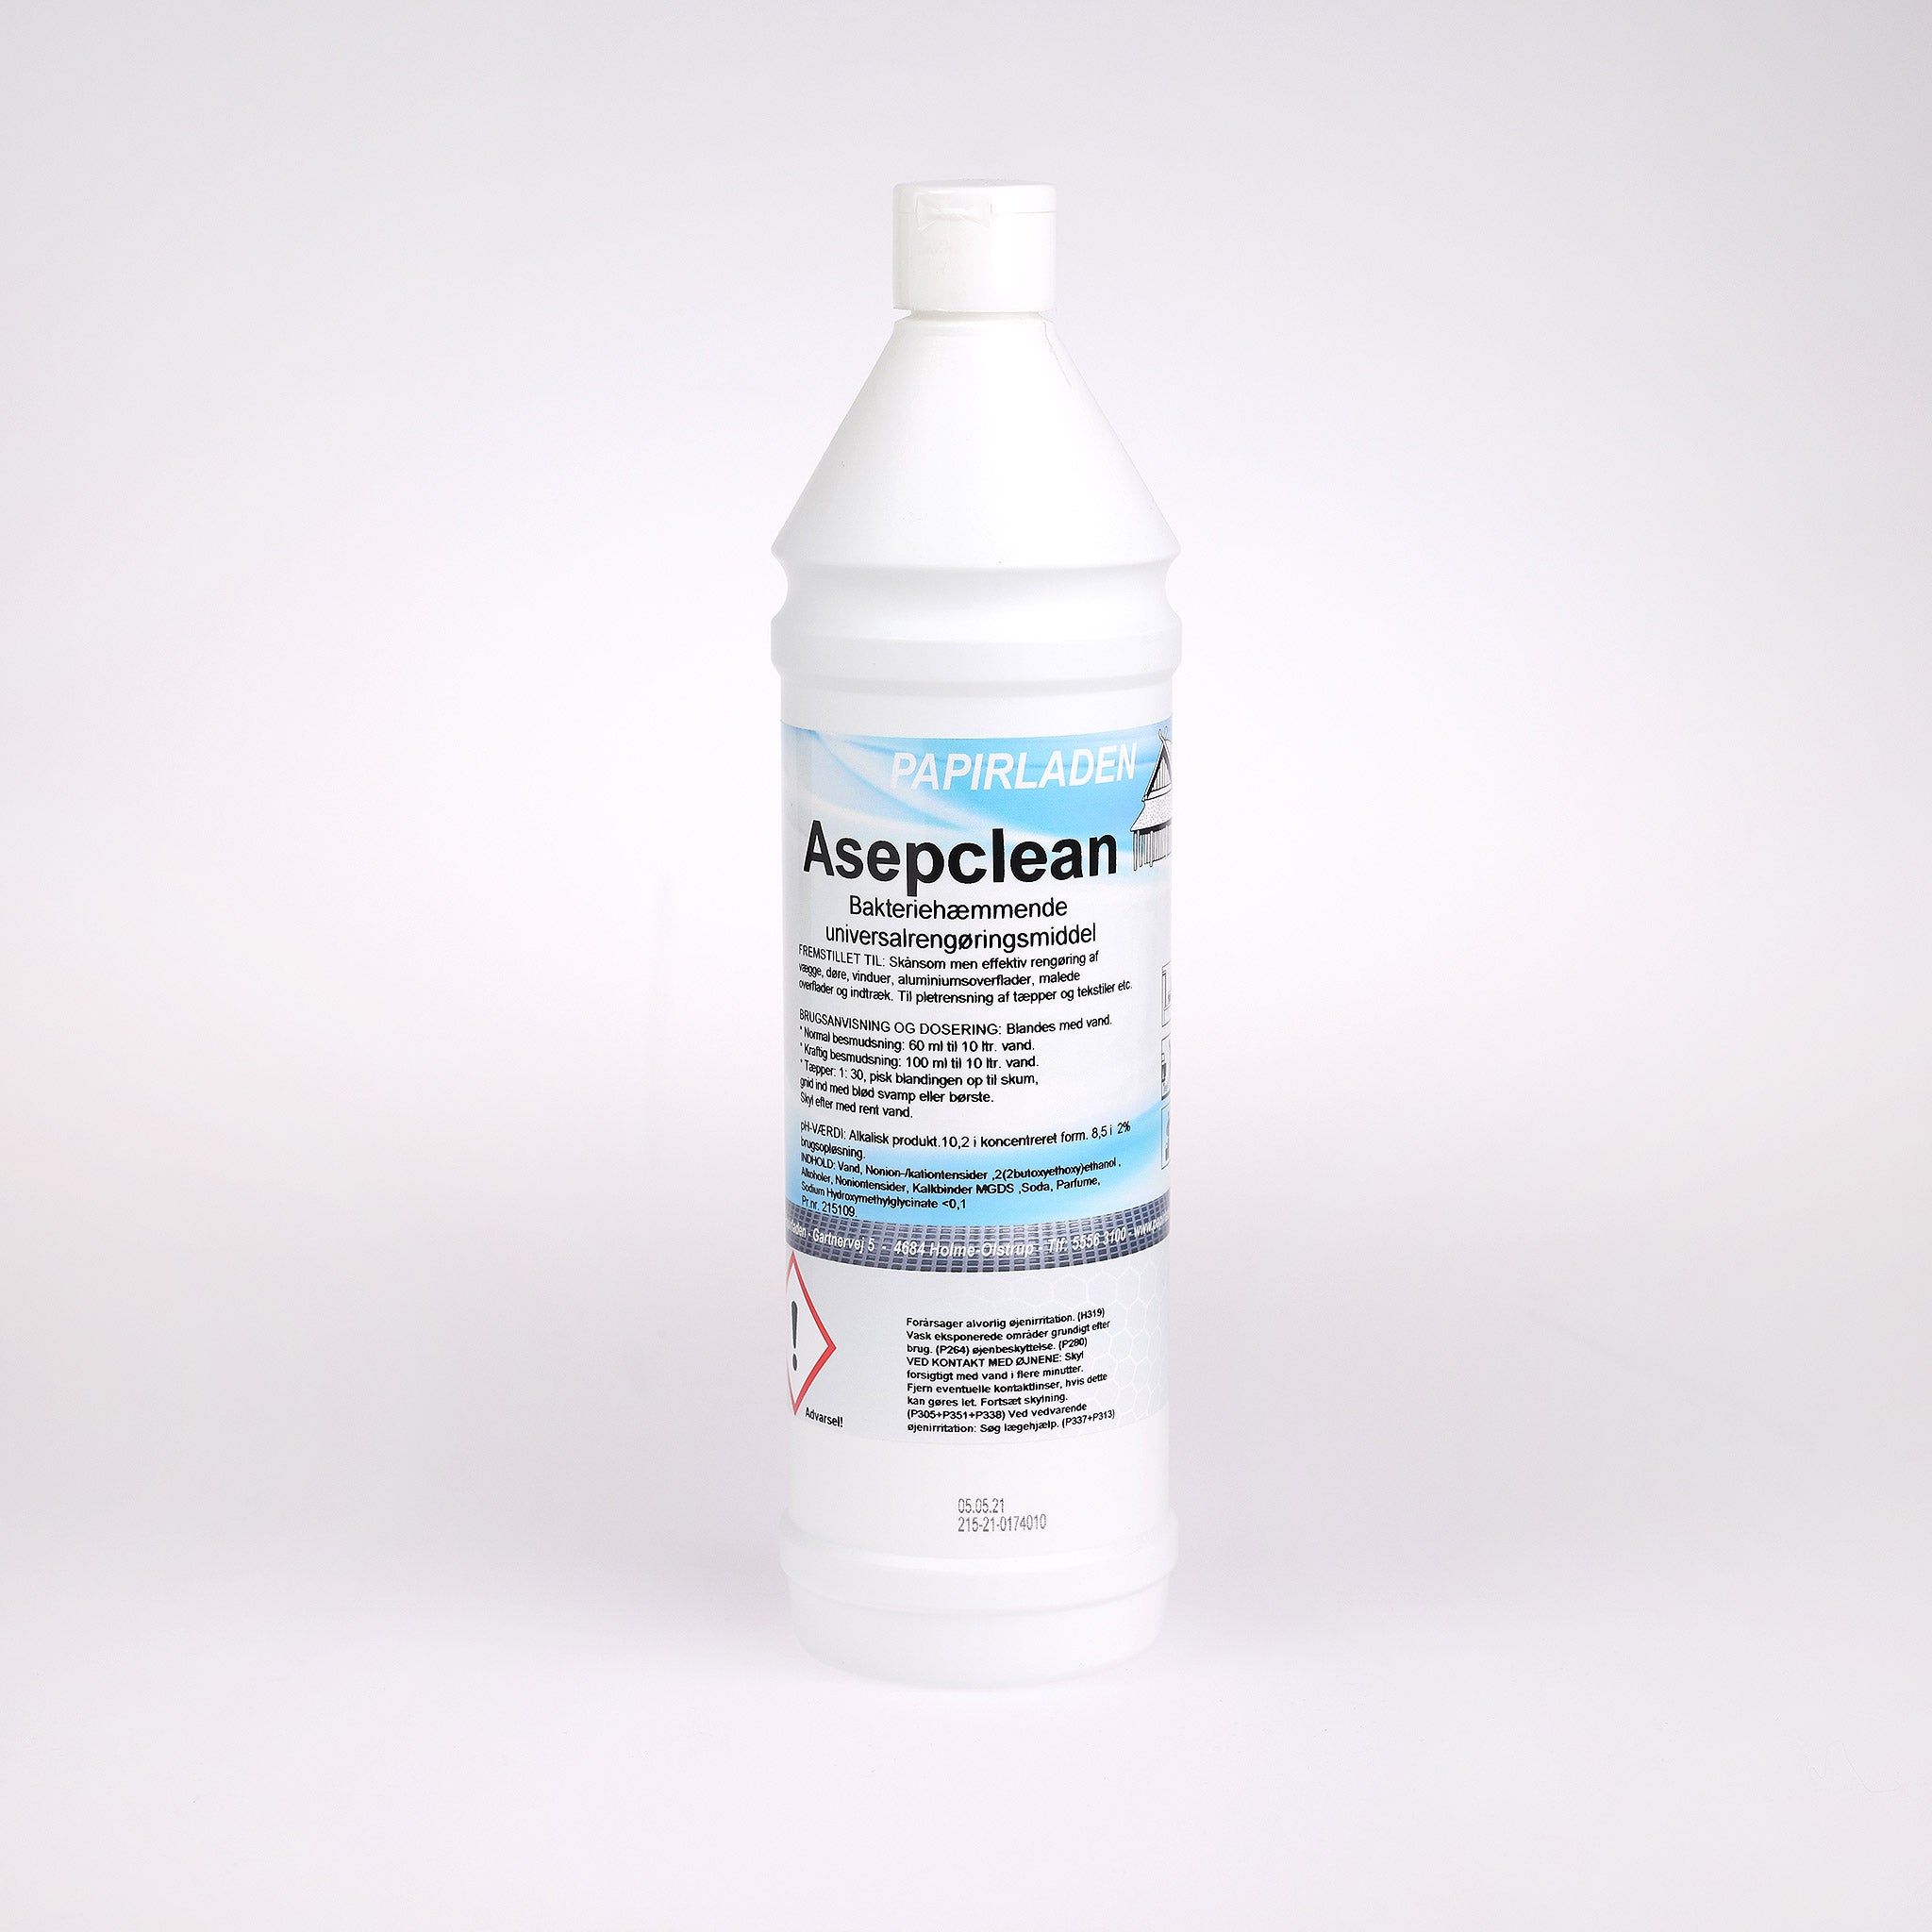 Universalrengøring Asepclean sikrer dig en bakteriehæmmende rengøring og opløser nemt sekret, så vira ikke formerer sig.